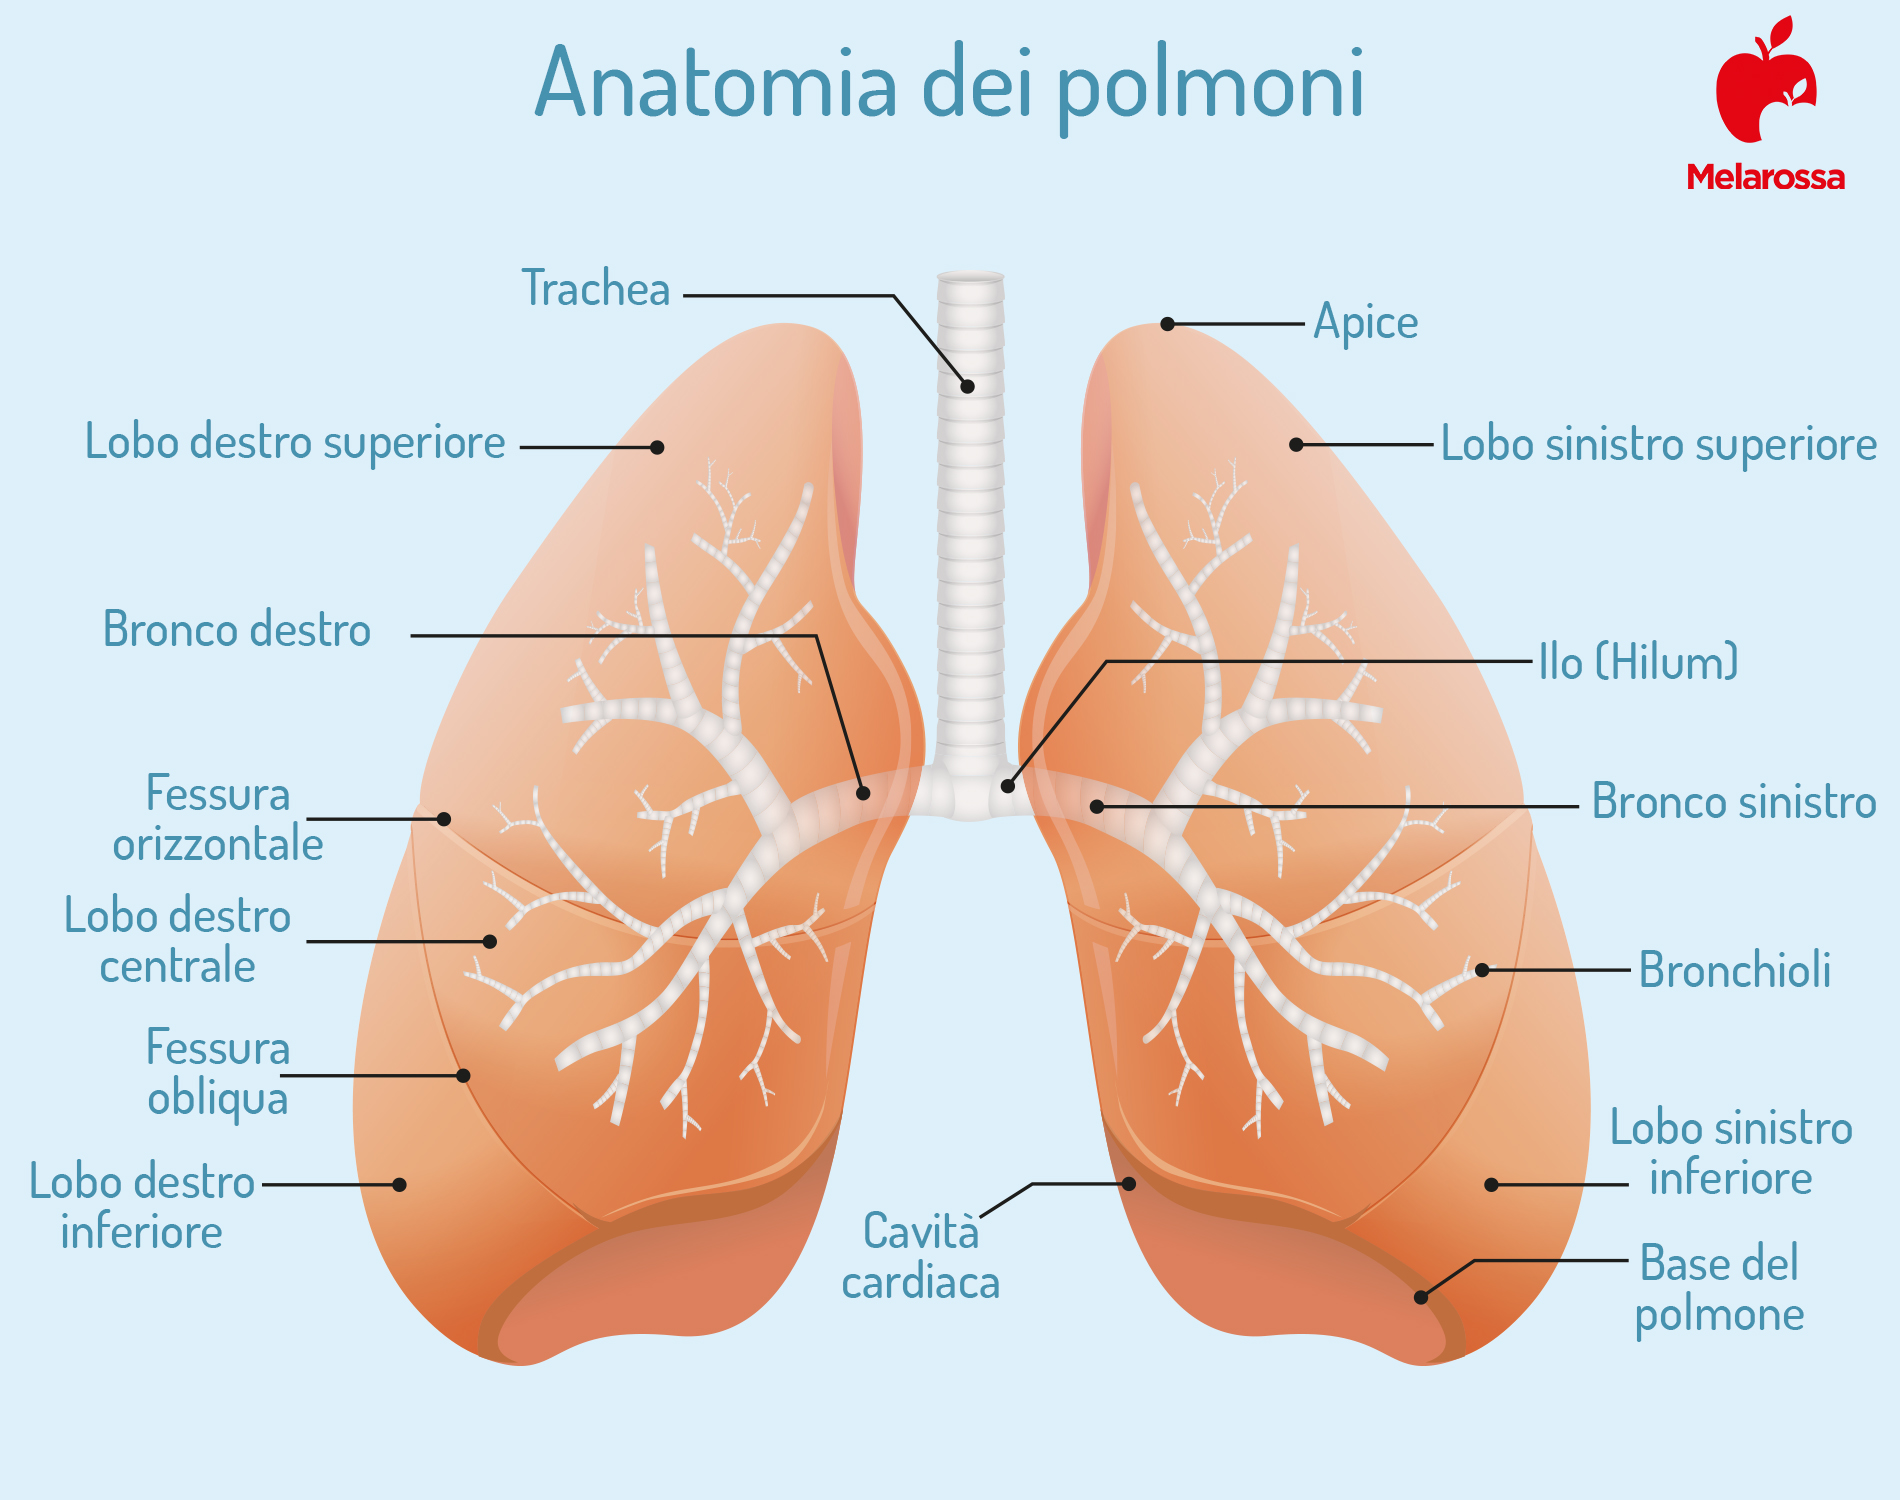 enfisema polmonare: anatomia dei polmoni